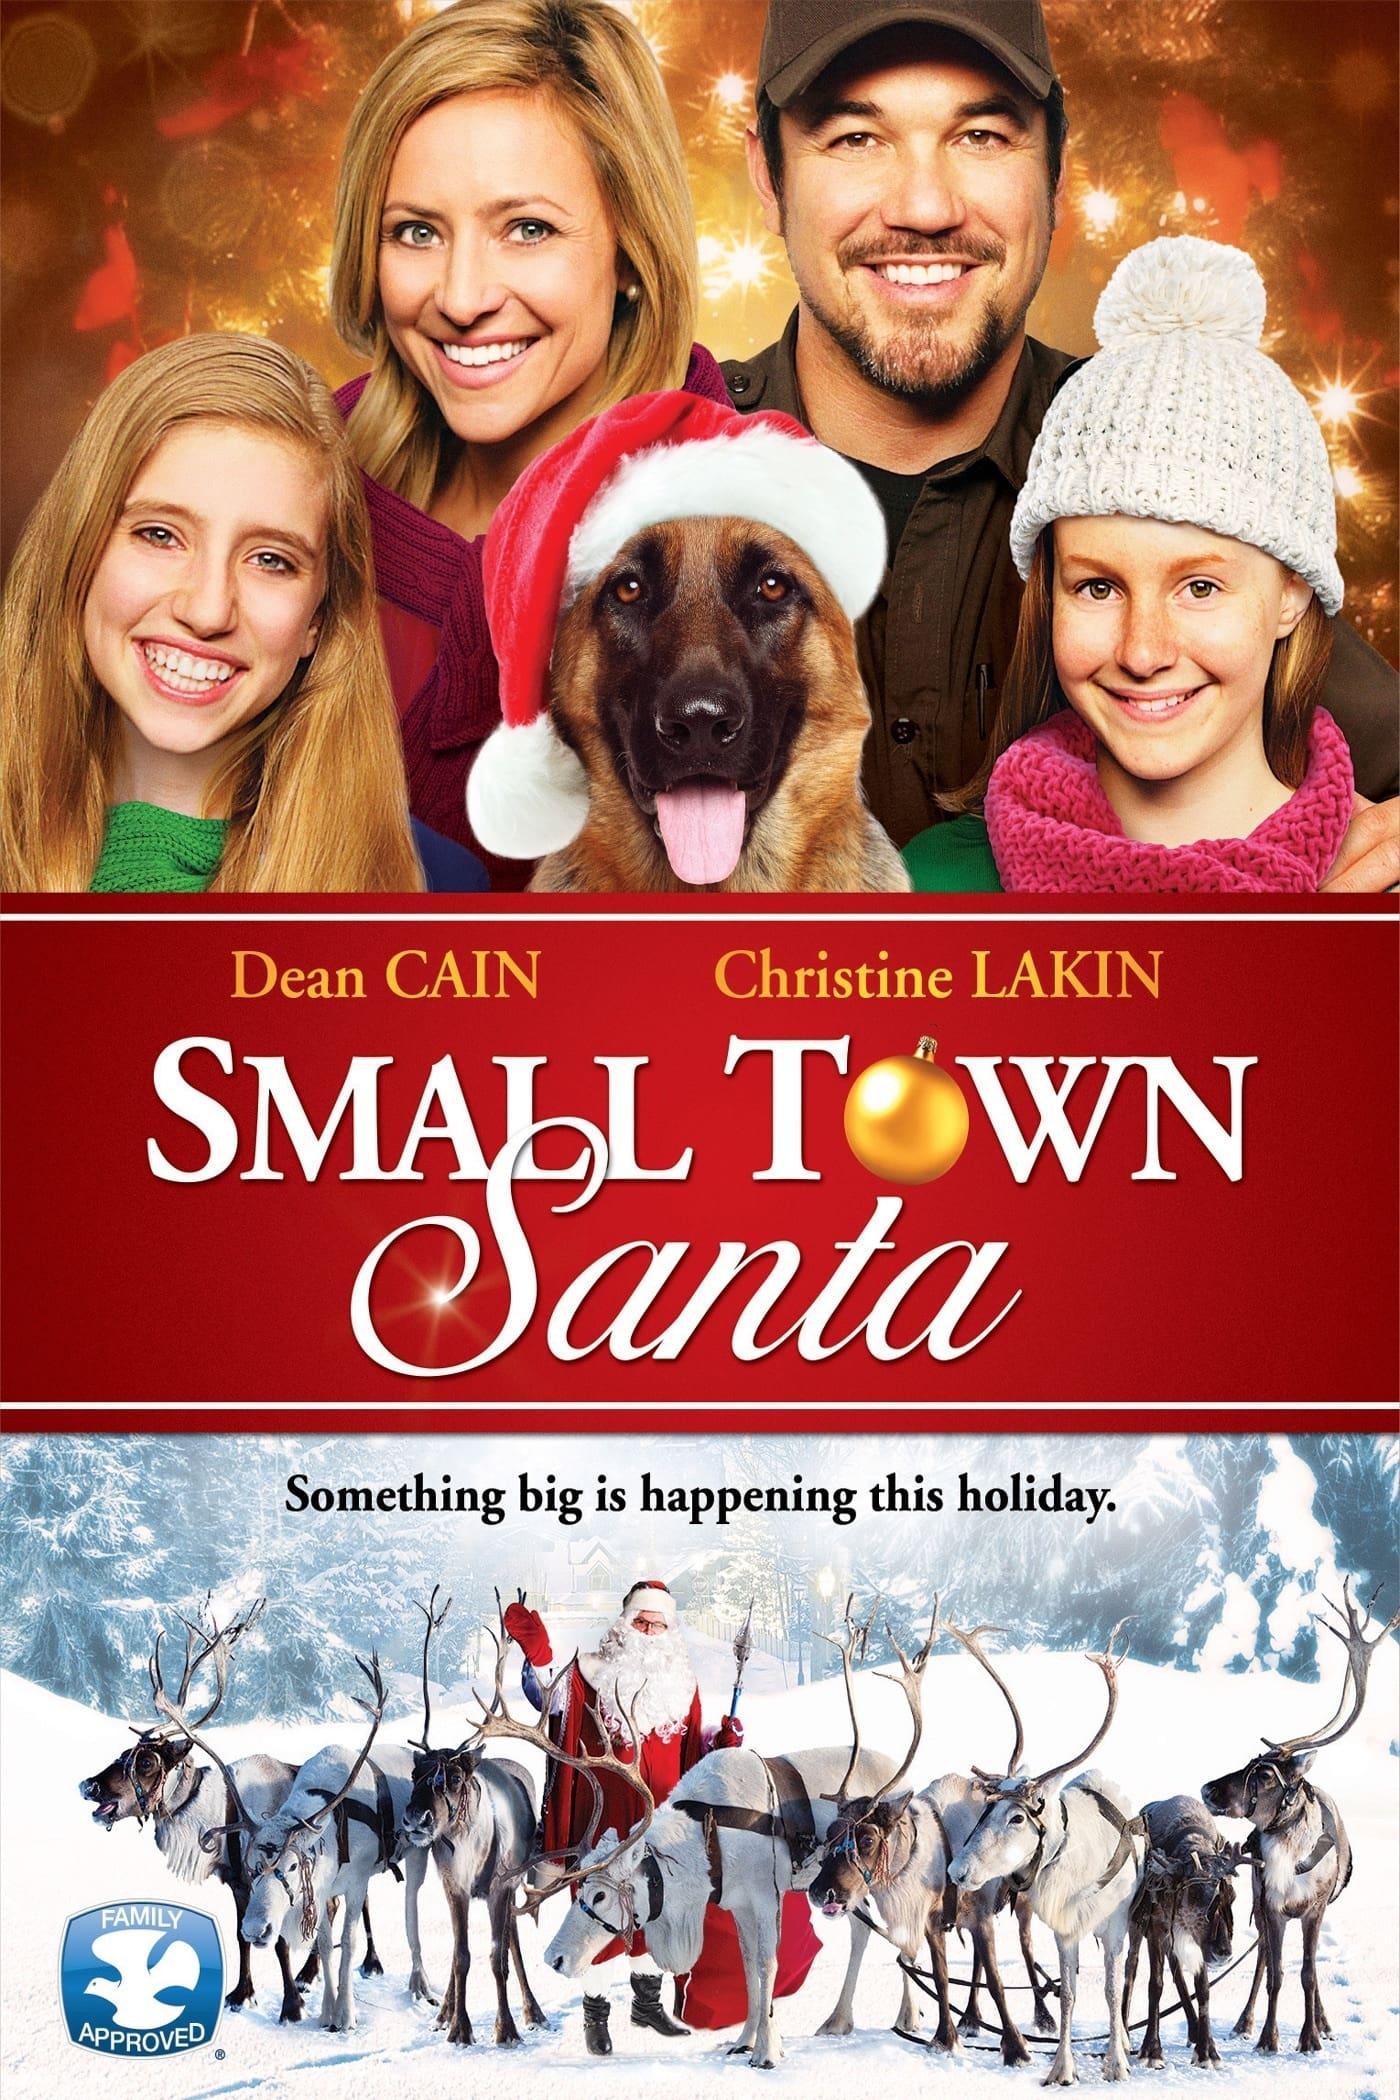 Small Town Santa poster